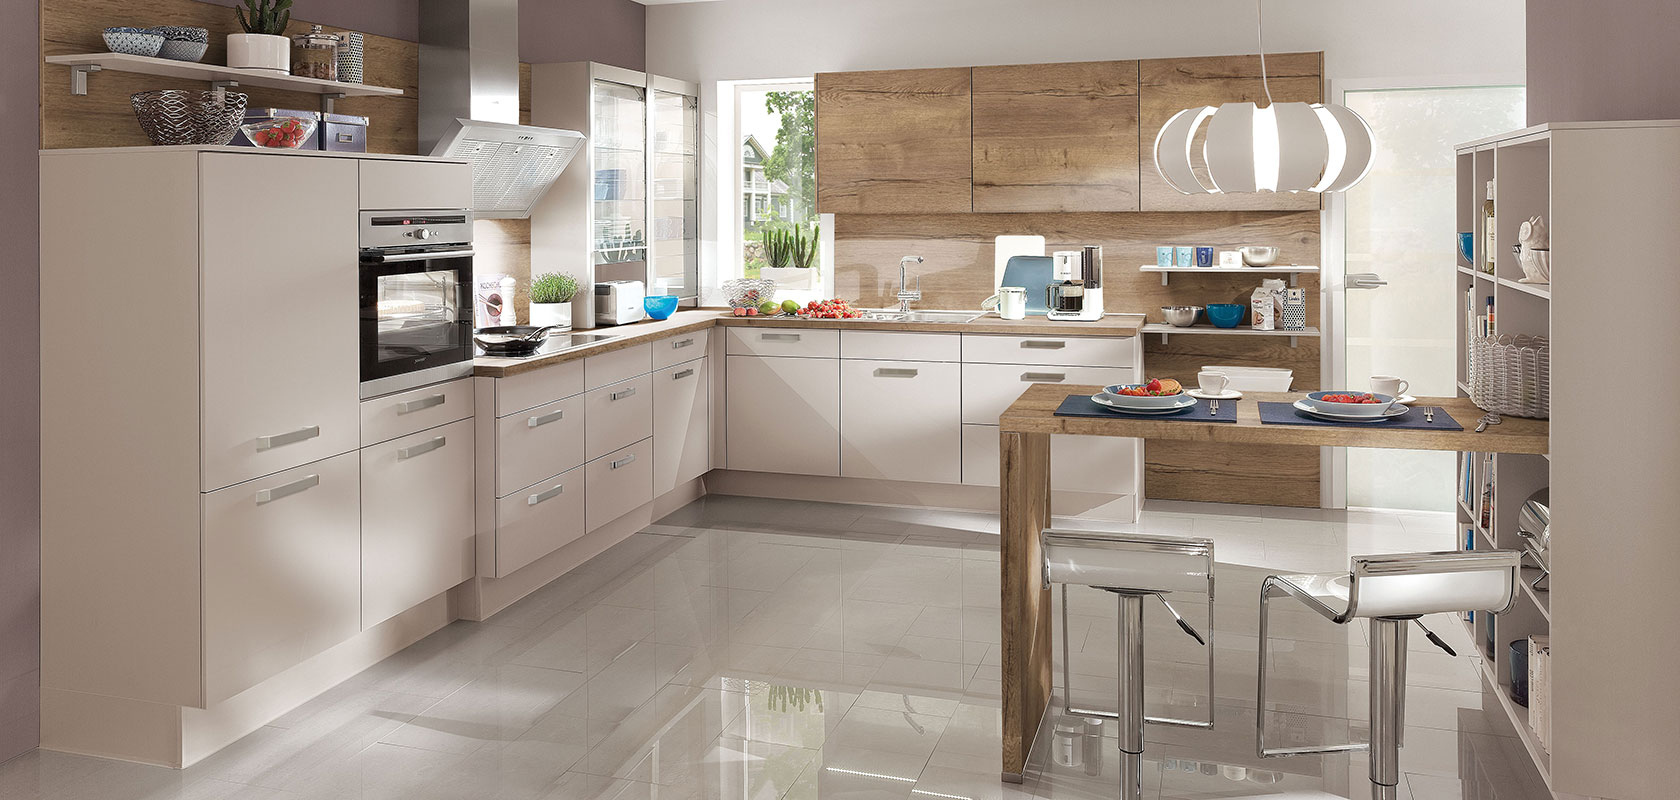 Moderne Kücheninnenräume mit eleganten weißen Schränken, Holzakzenten und Edelstahlgeräten, beleuchtet von natürlichem Licht und eleganten Pendelleuchten.